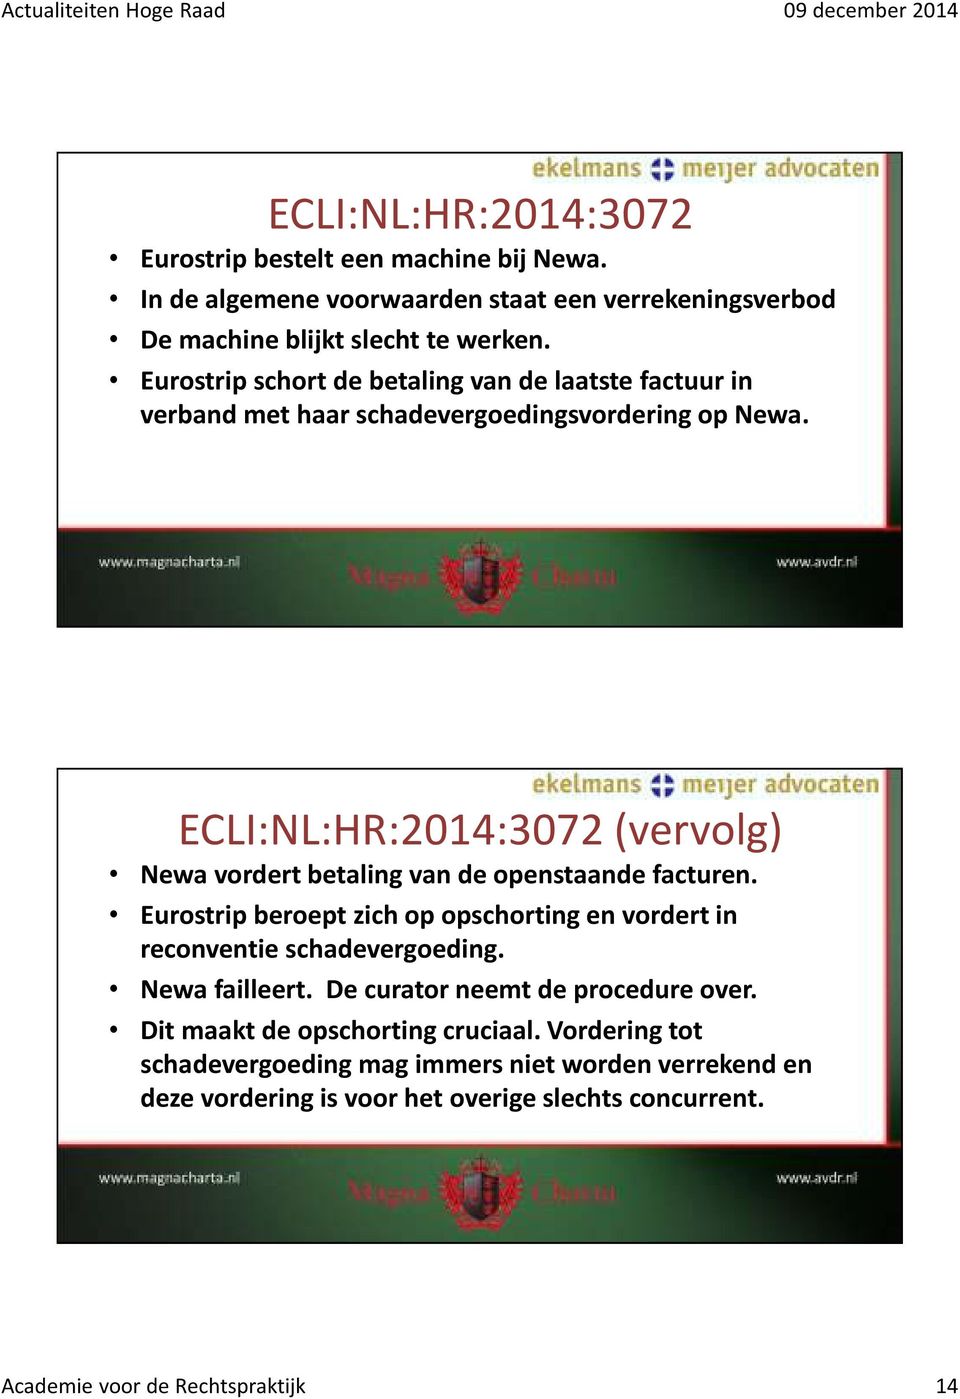 ECLI:NL:HR:2014:3072 (vervolg) Newavordert betaling van de openstaande facturen. Eurostrip beroept zich op opschorting en vordert in reconventie schadevergoeding.